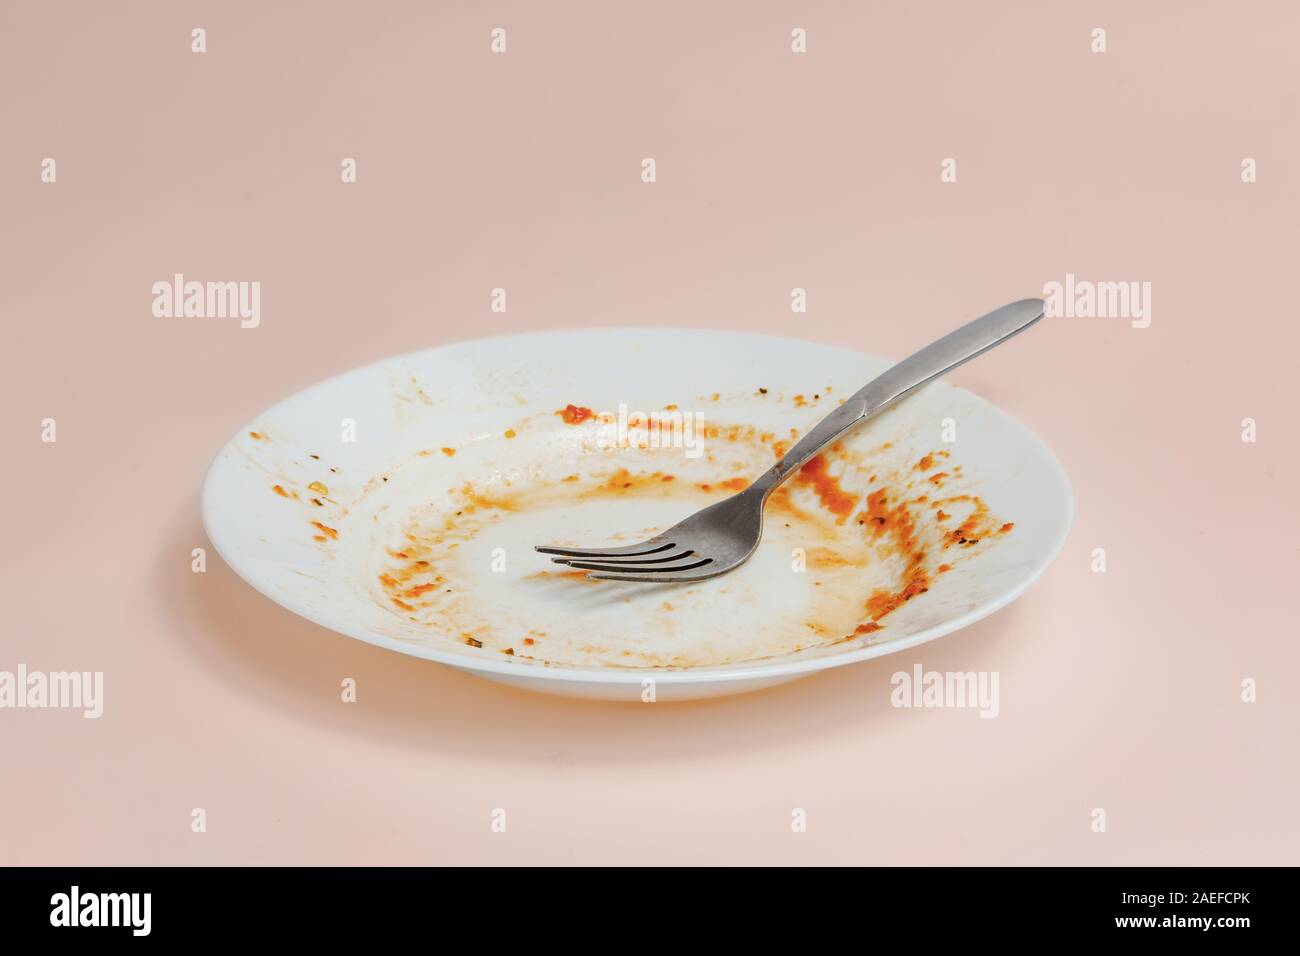 Ein Teller mit Resten von Tomatensauce. Ungewaschen Gerichte illusatration, schmutzige Teller auf hellen Hintergrund Stockfoto